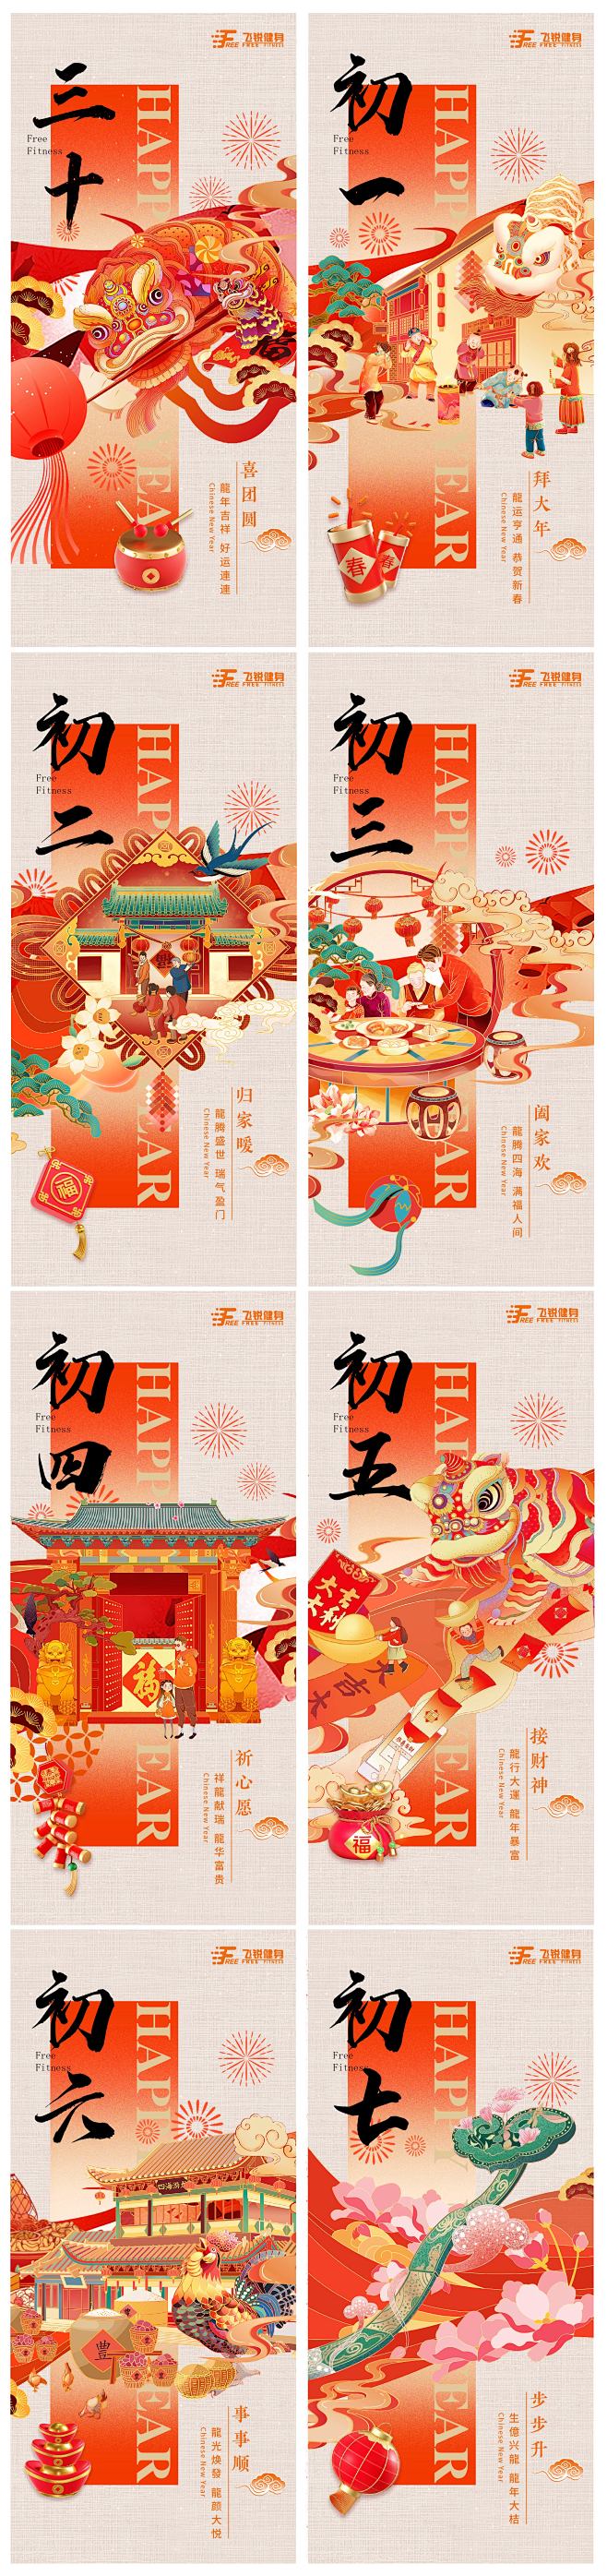 新年年俗系列海报-志设网-zs9.com